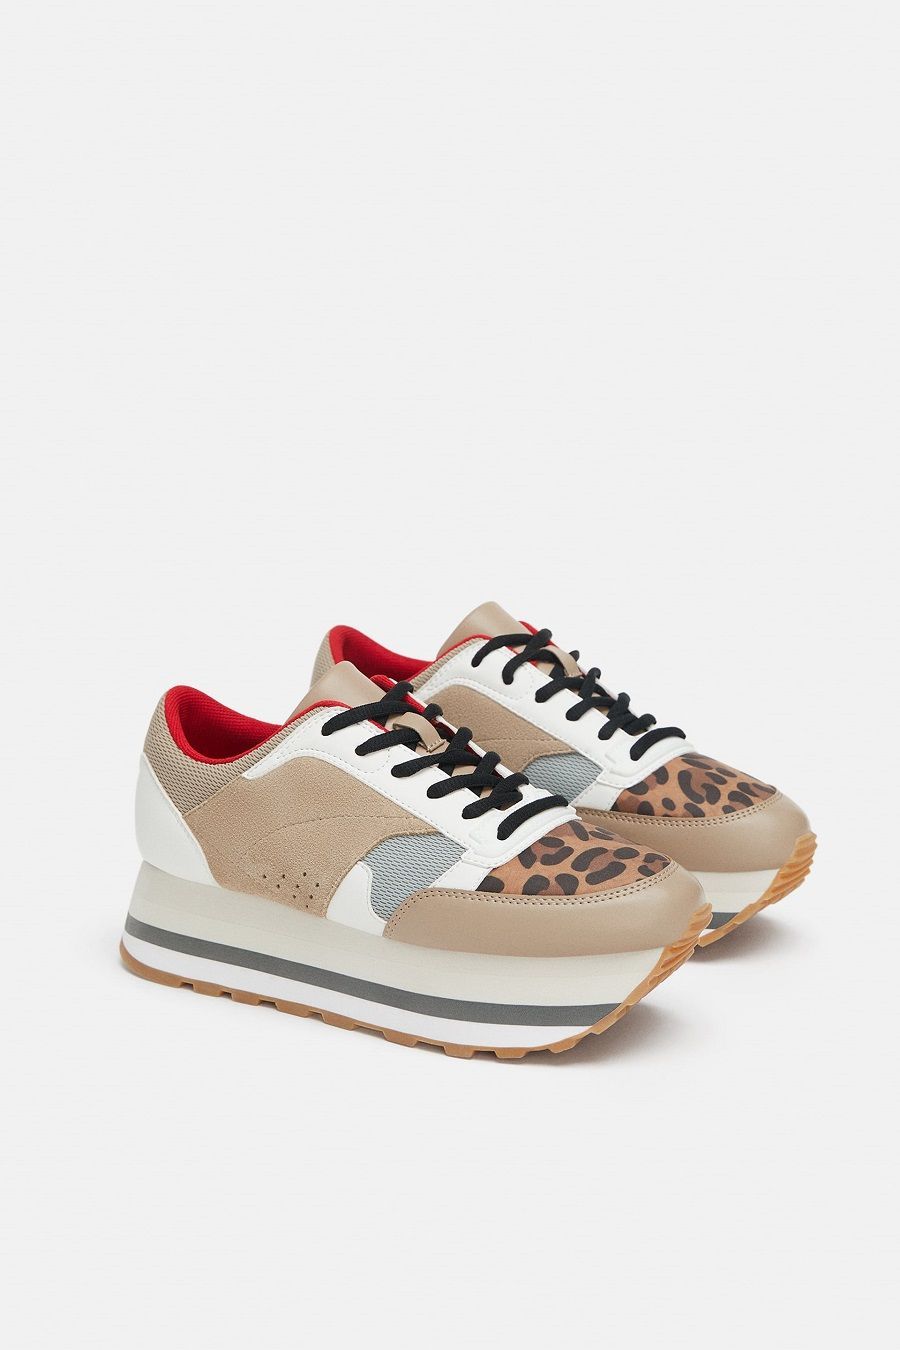 Rawr! Pilihan Sepatu Motif Leopard Paling Kece di Minggu Ini